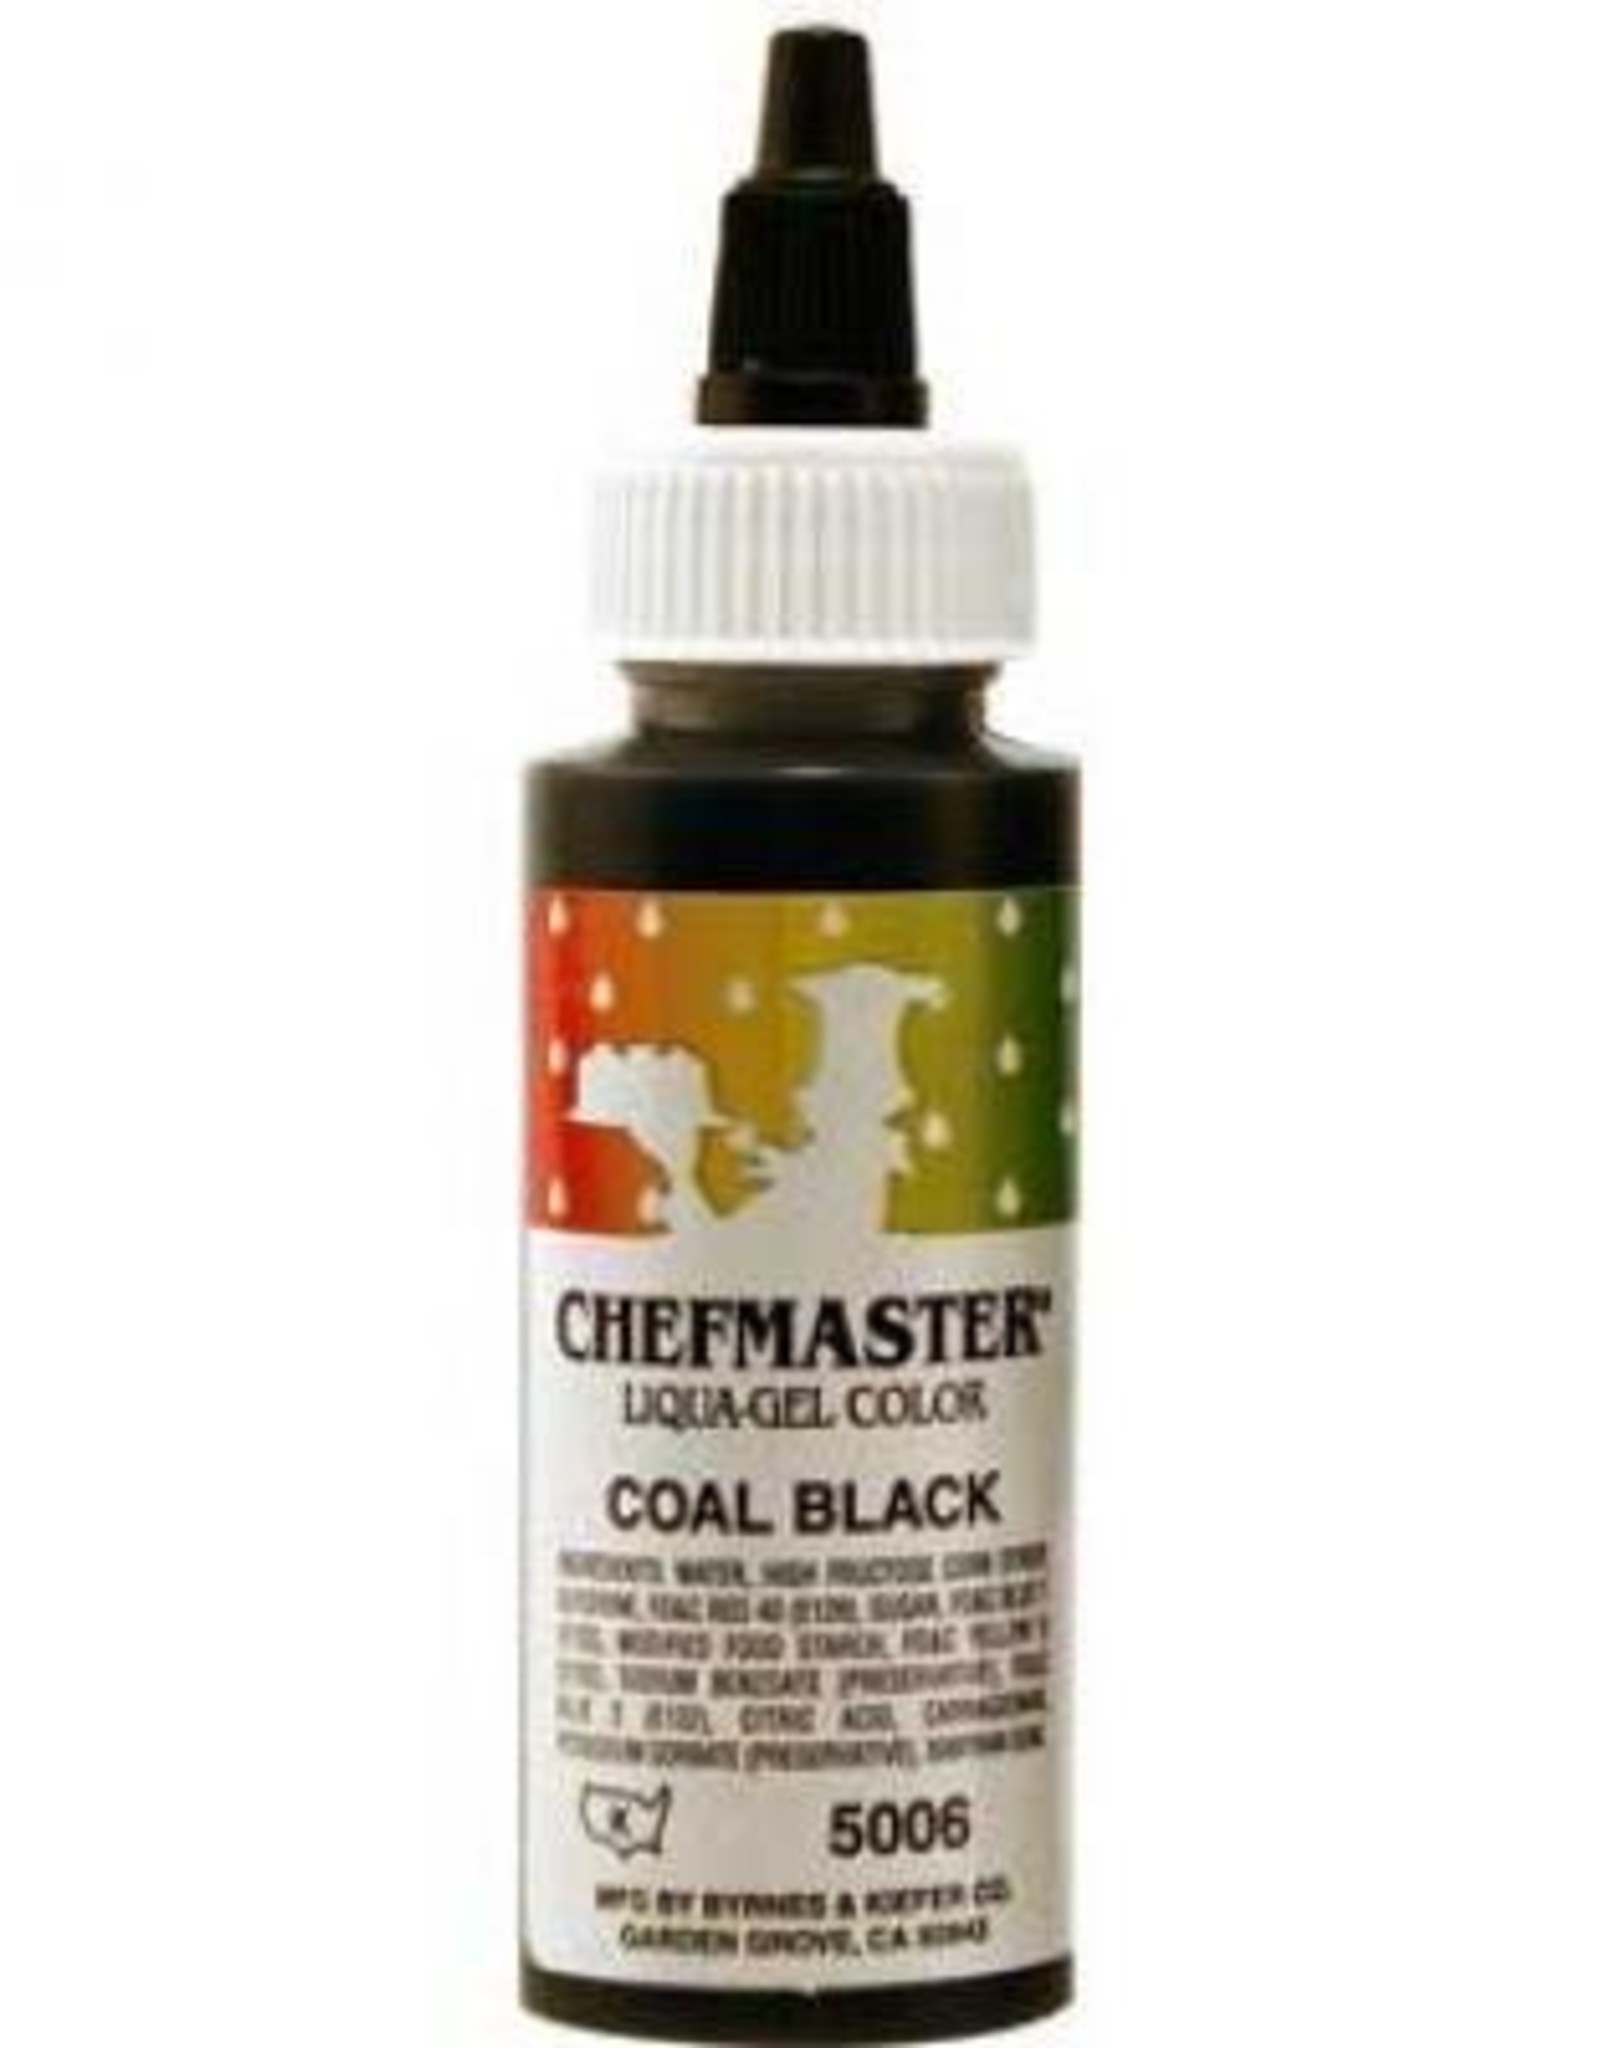 Coal Black Chefmaster Liqua-gel 2.3 ounce